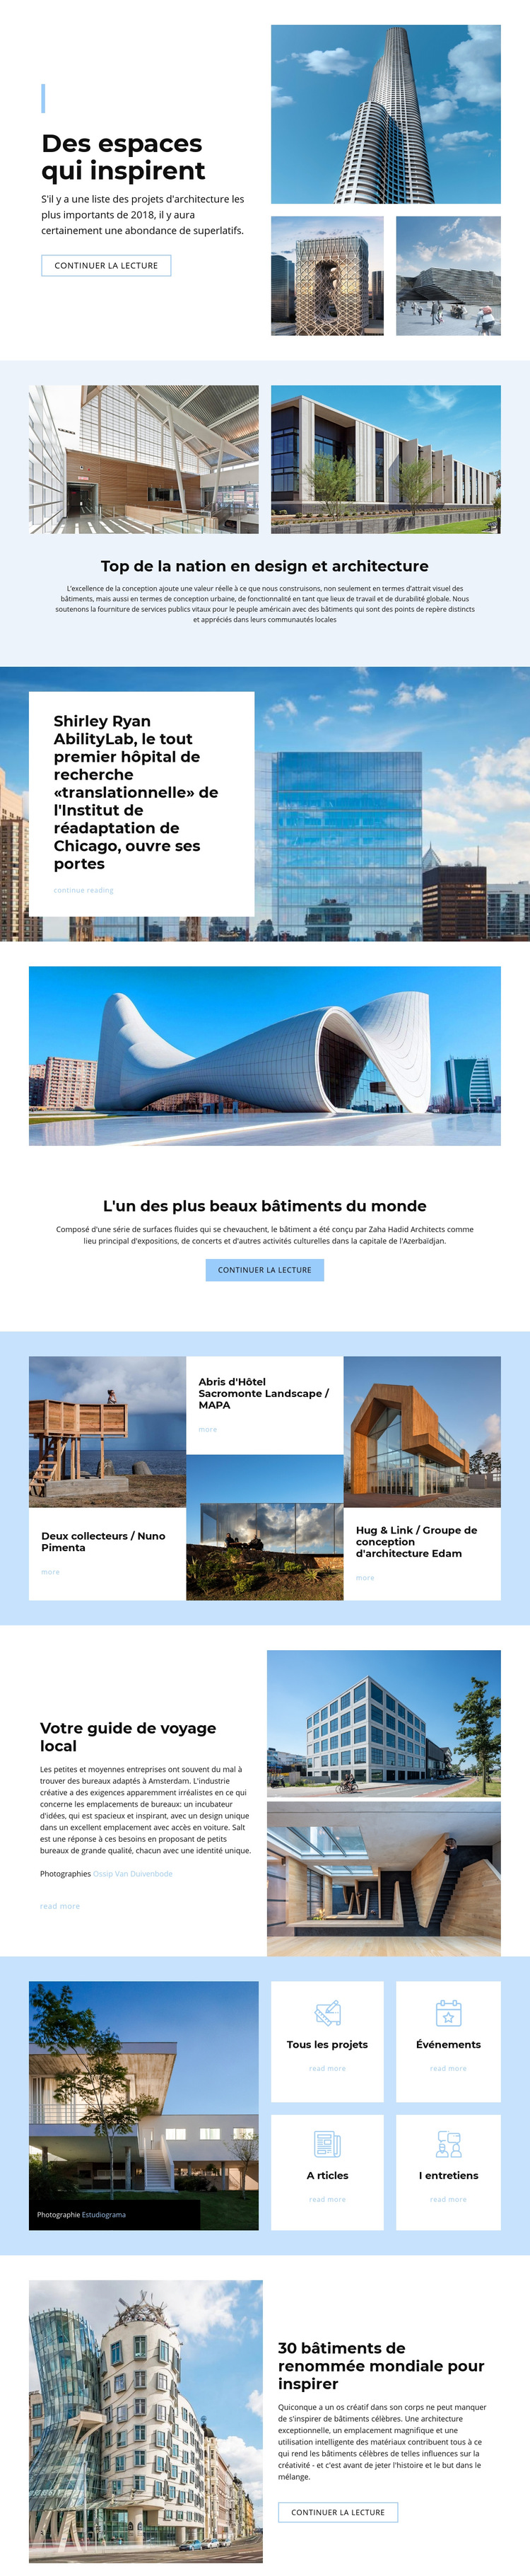 Architecture inspirée de l'espace Modèle de site Web